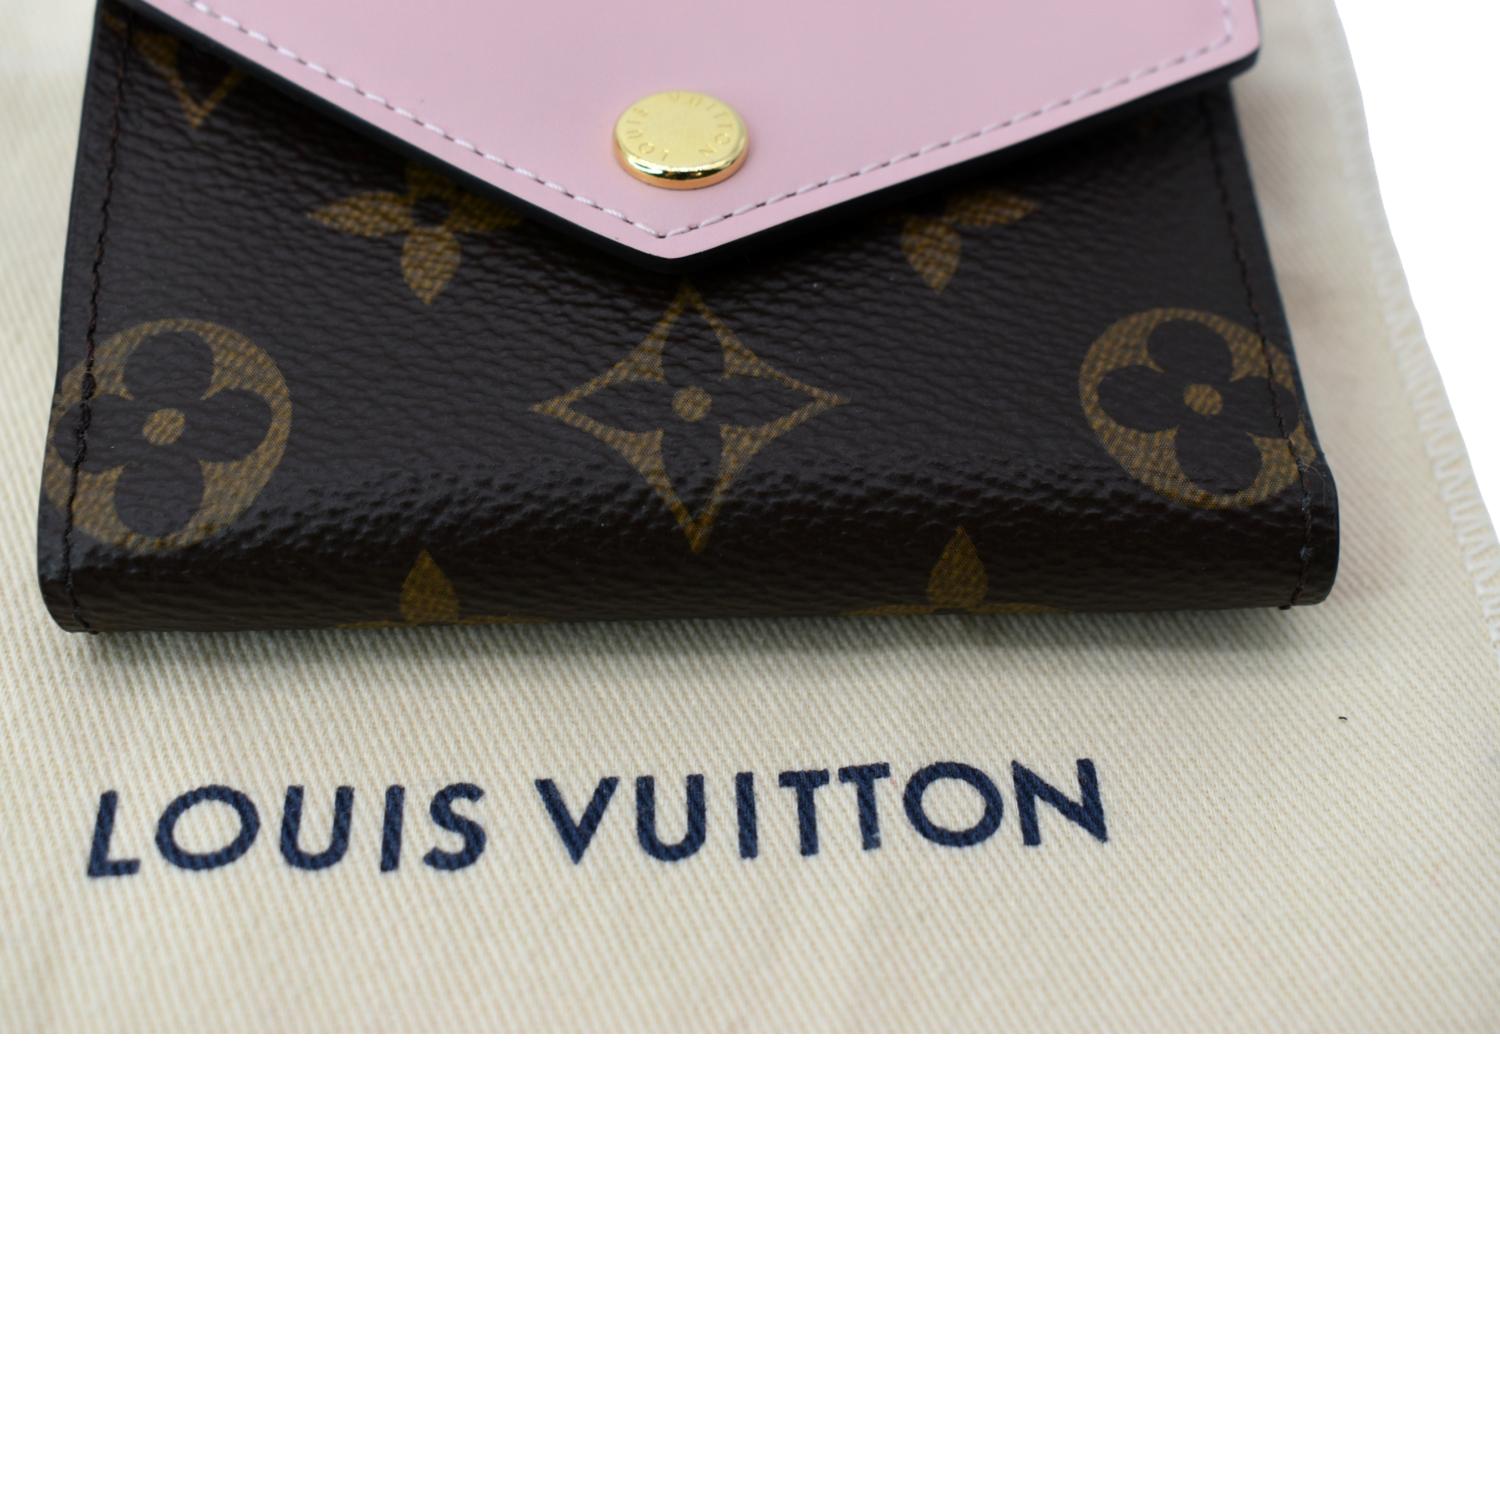 Louis Vuitton - Zoe Wallet in Monogram Rose Ballerine